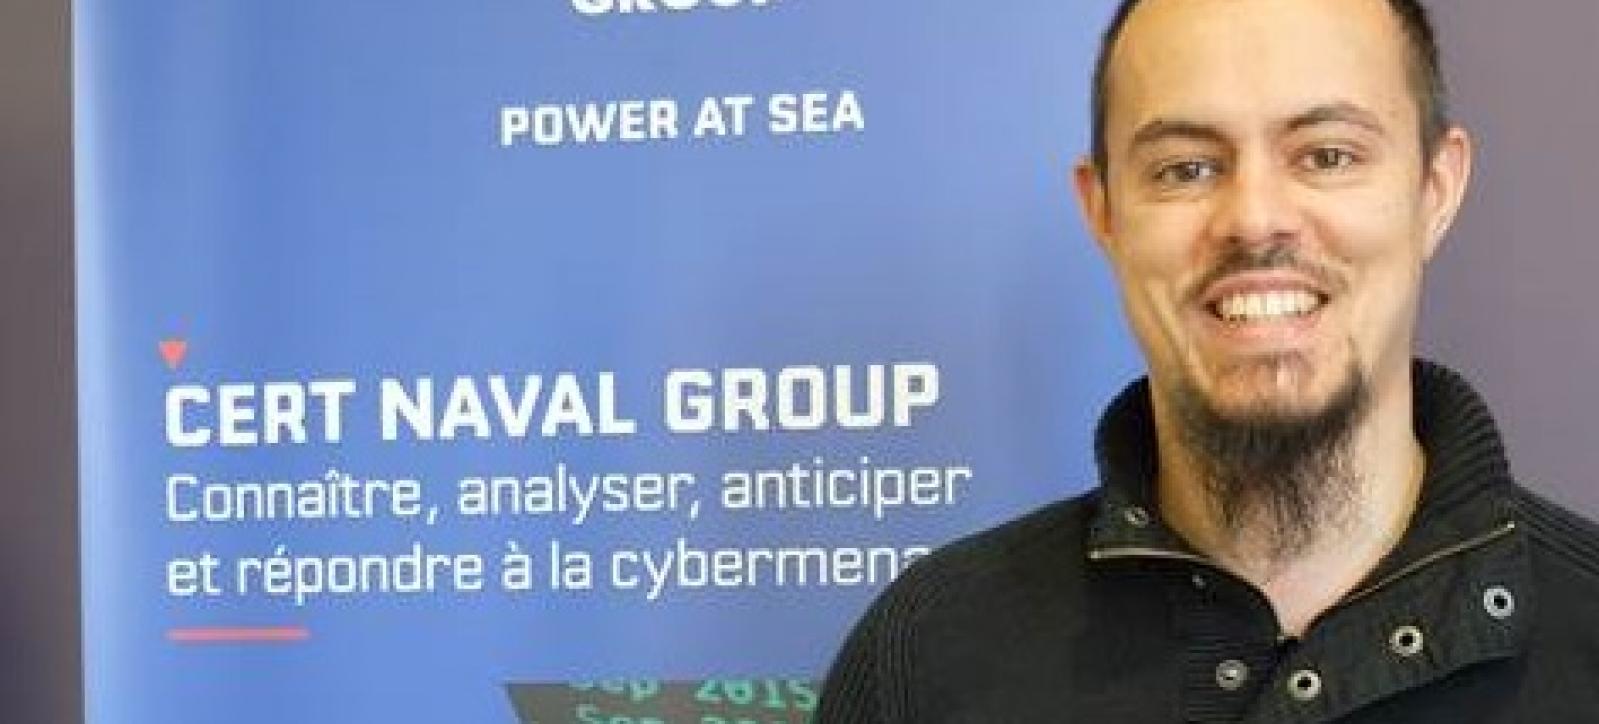 Ancien marin, Jérémie Liebhardt a rejoint Naval Group en 2018 après une formation d’ingénieur cyber en alternance